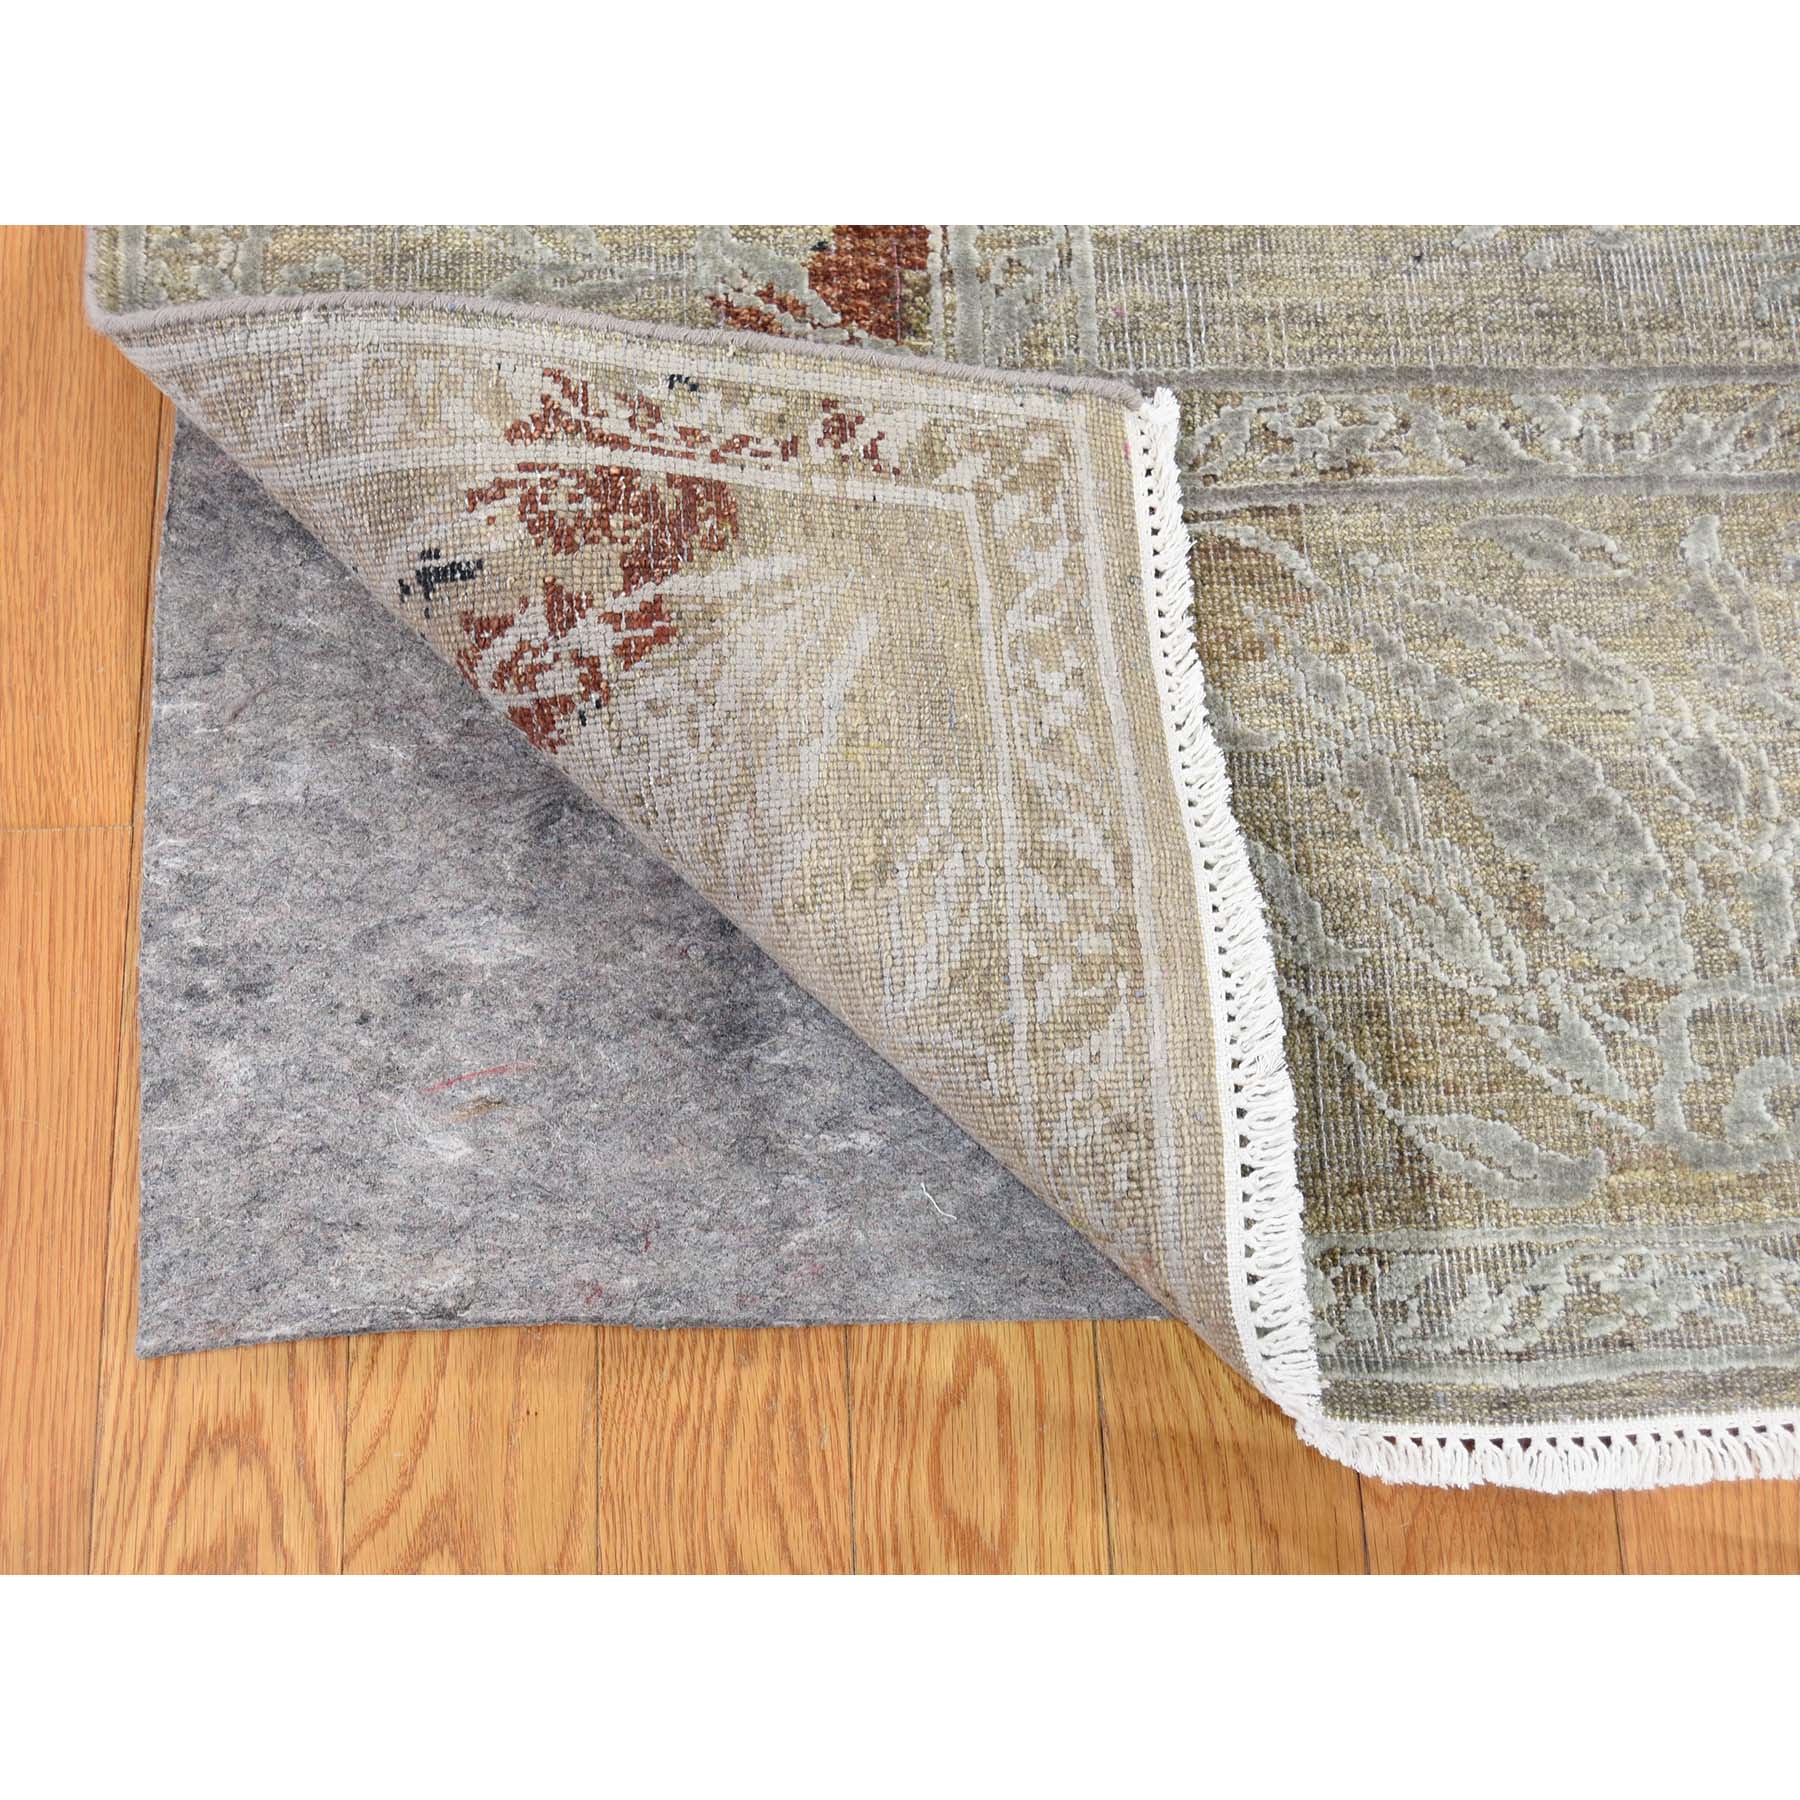 9-1 x12-2  Silk With Textured Wool Broken Tulip Design Hand-Knotted Oriental Rug 